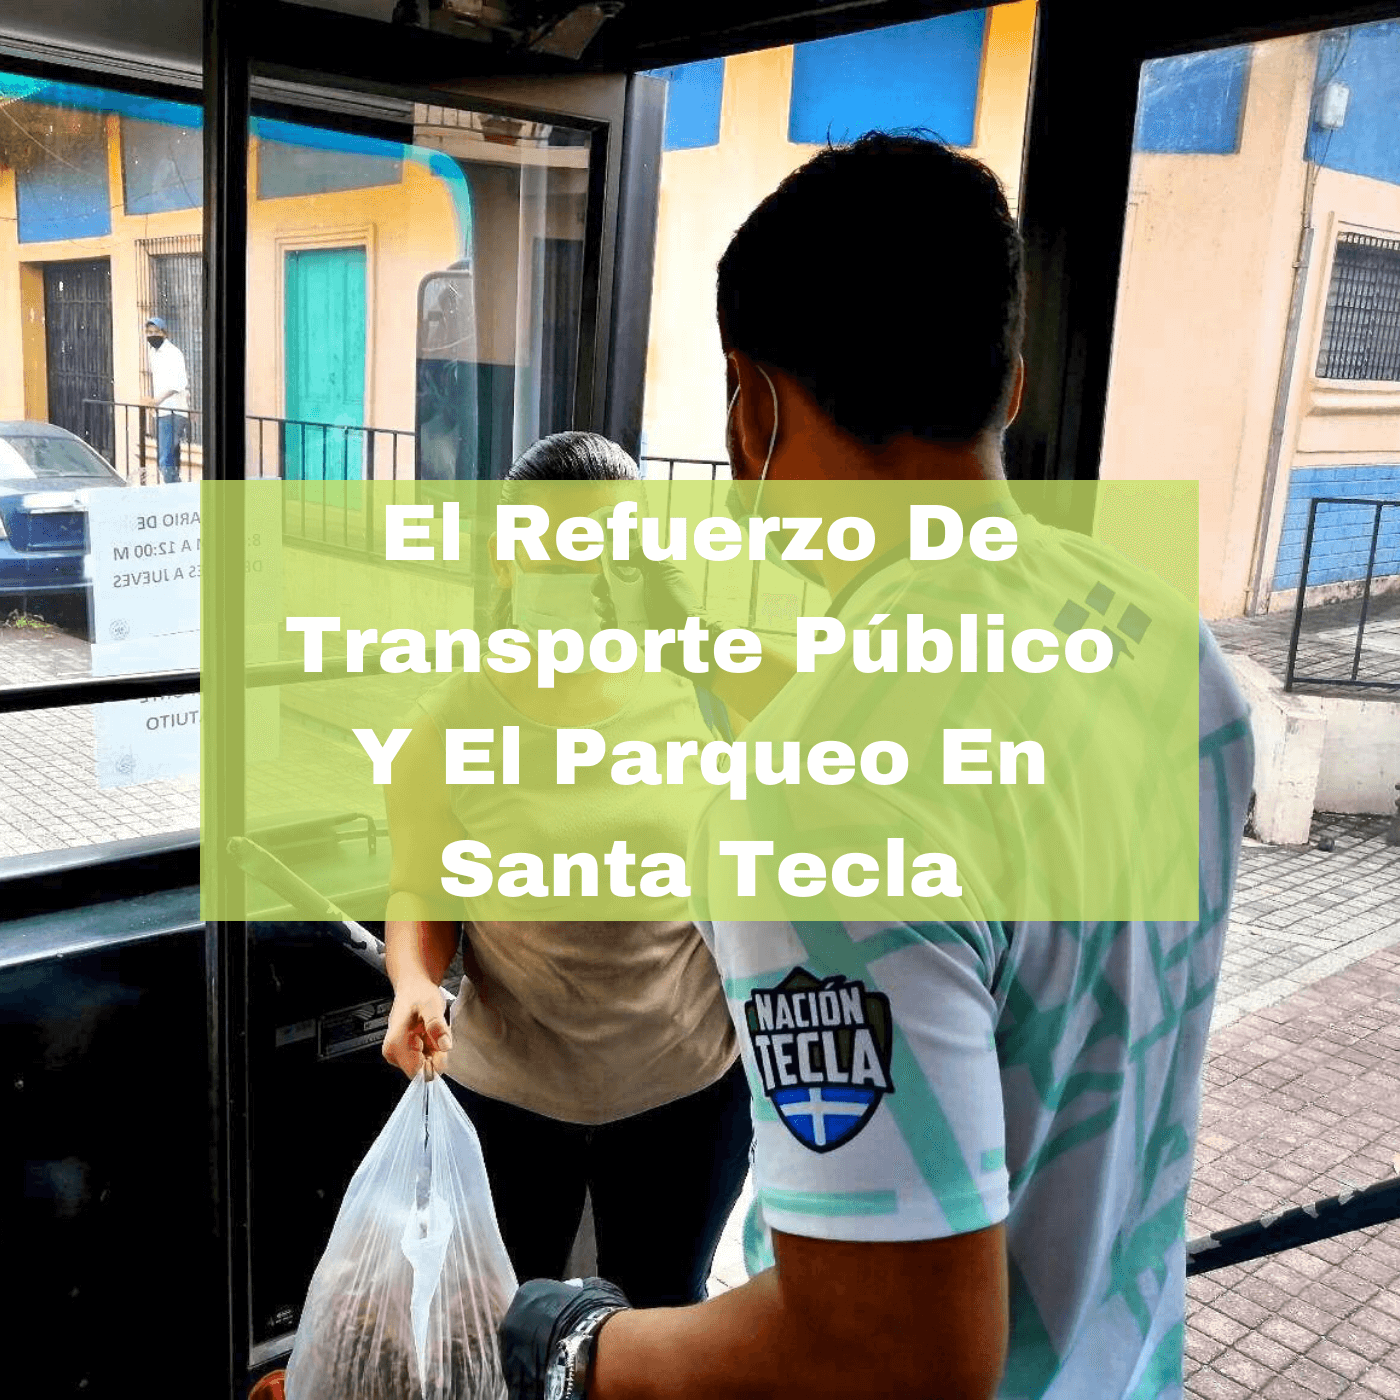 El Refuerzo De Transporte Público Y El Parqueo En Santa Tecla. Foto Portada. Infografía. Roberto d'Aubuisson. 2021